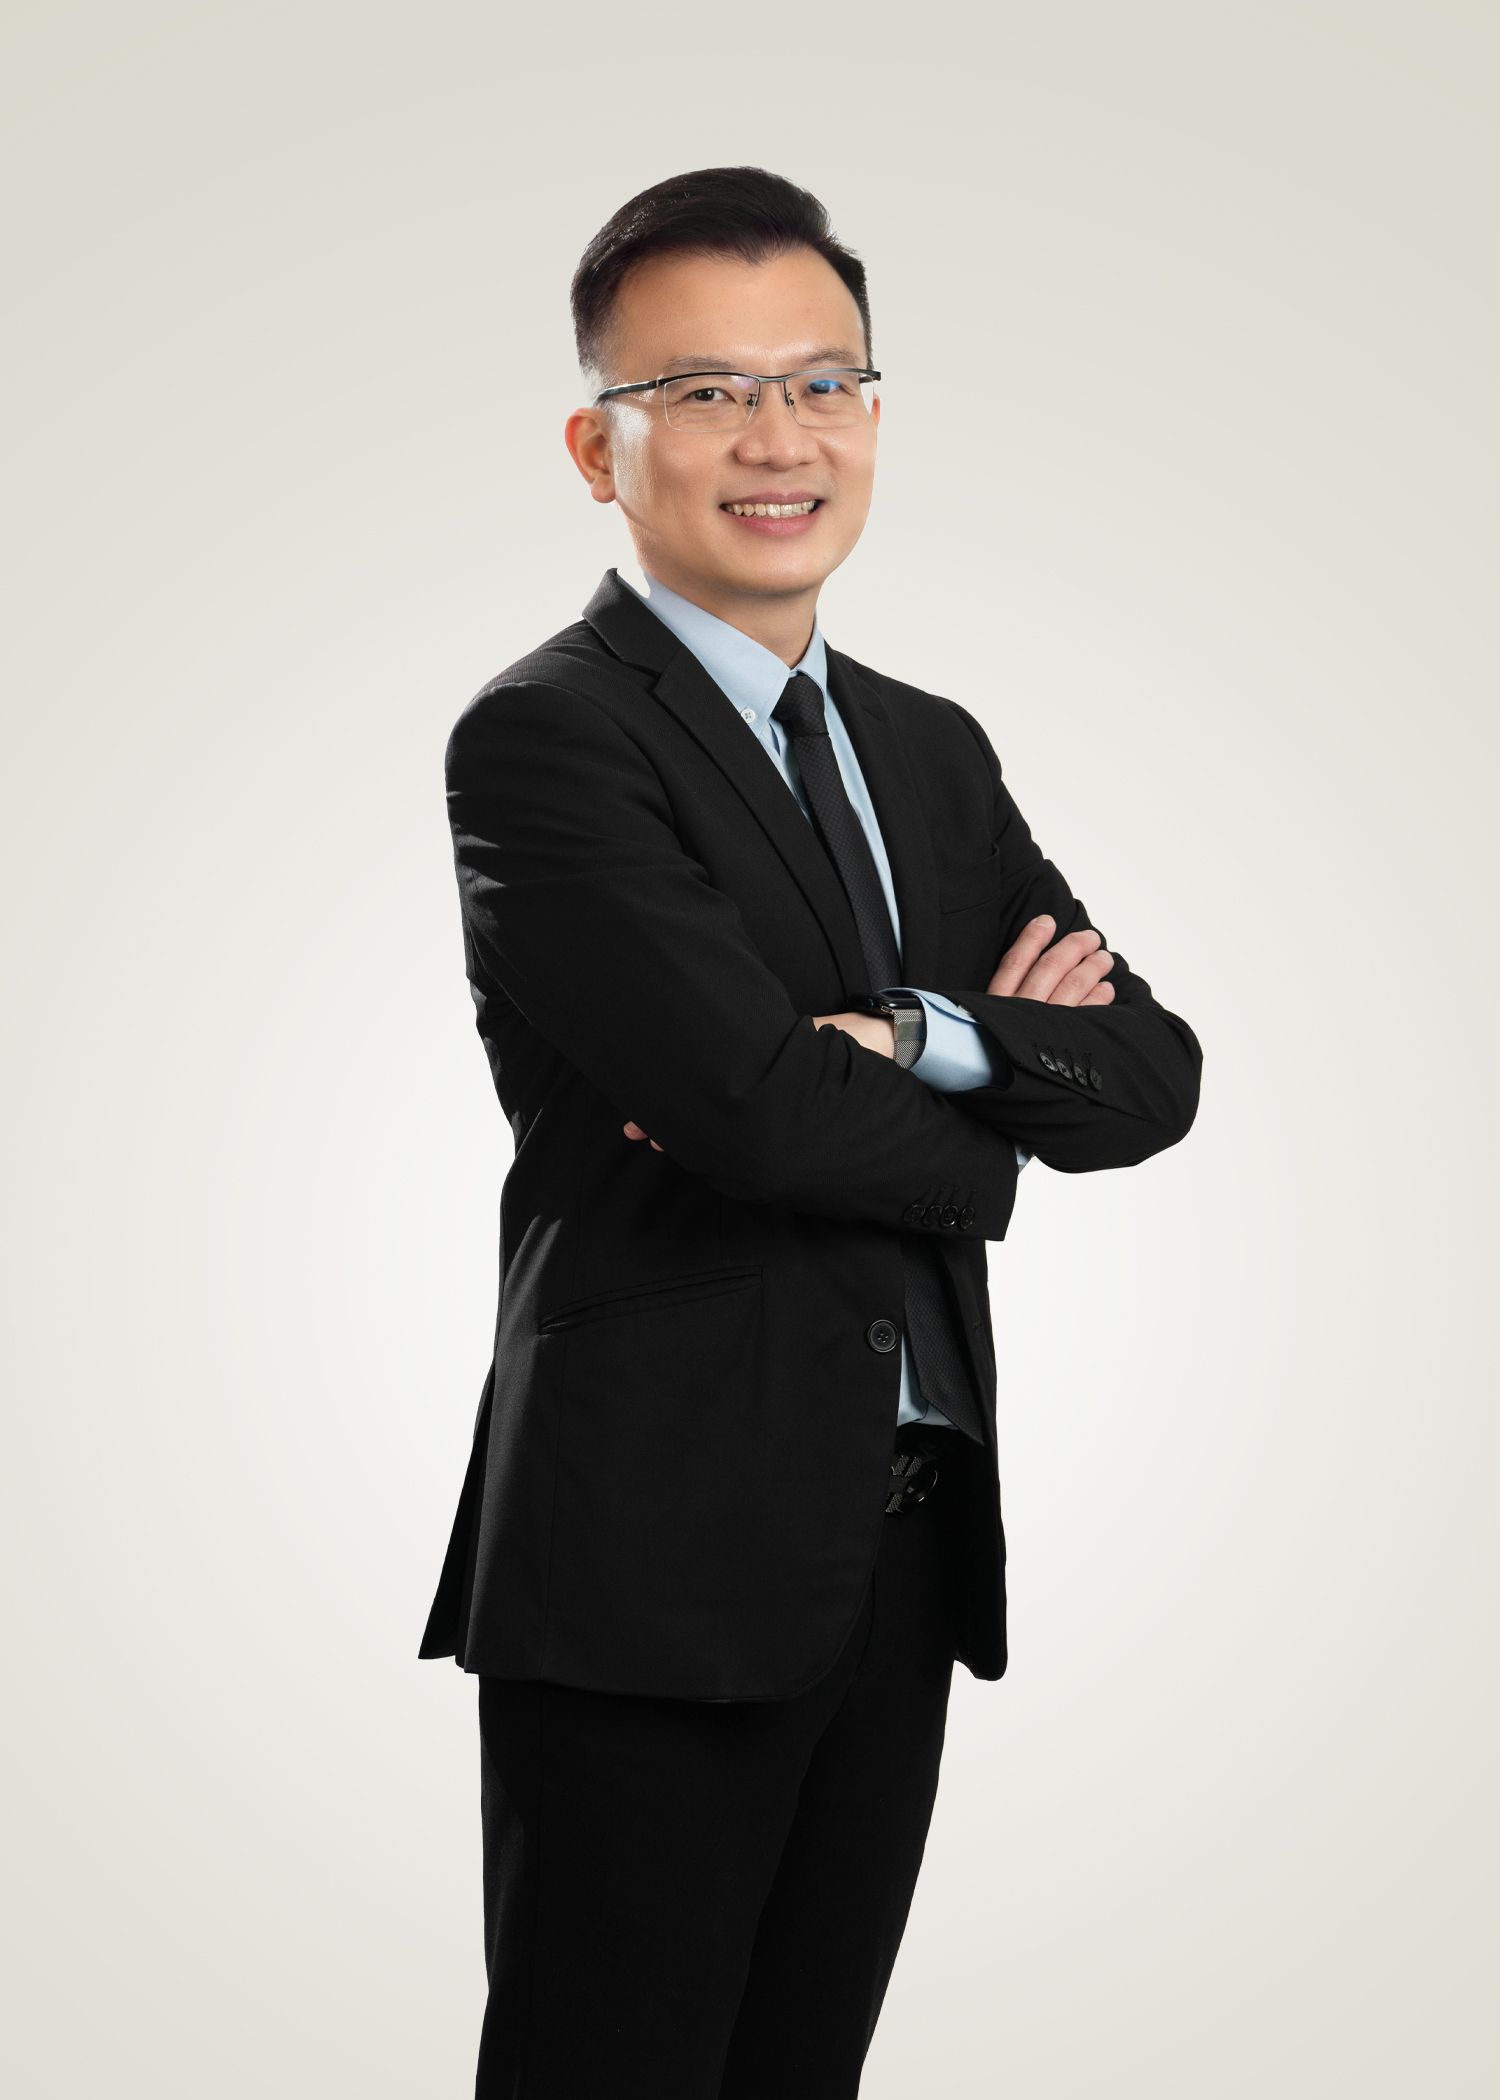 المدير الإداري لشركة DC Healthcare، الدكتور تشونغ تزي شنغ